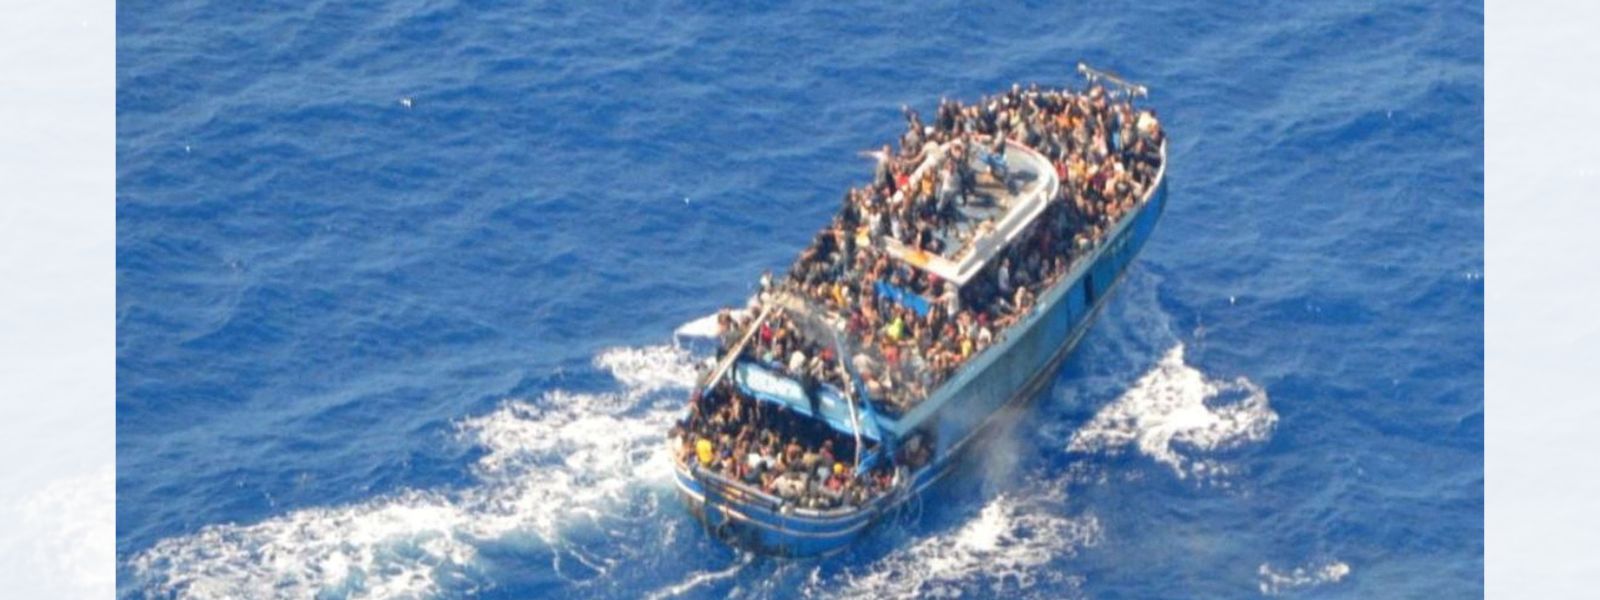 BREAKING: 300 Pakistanis drown in Greece tragedy